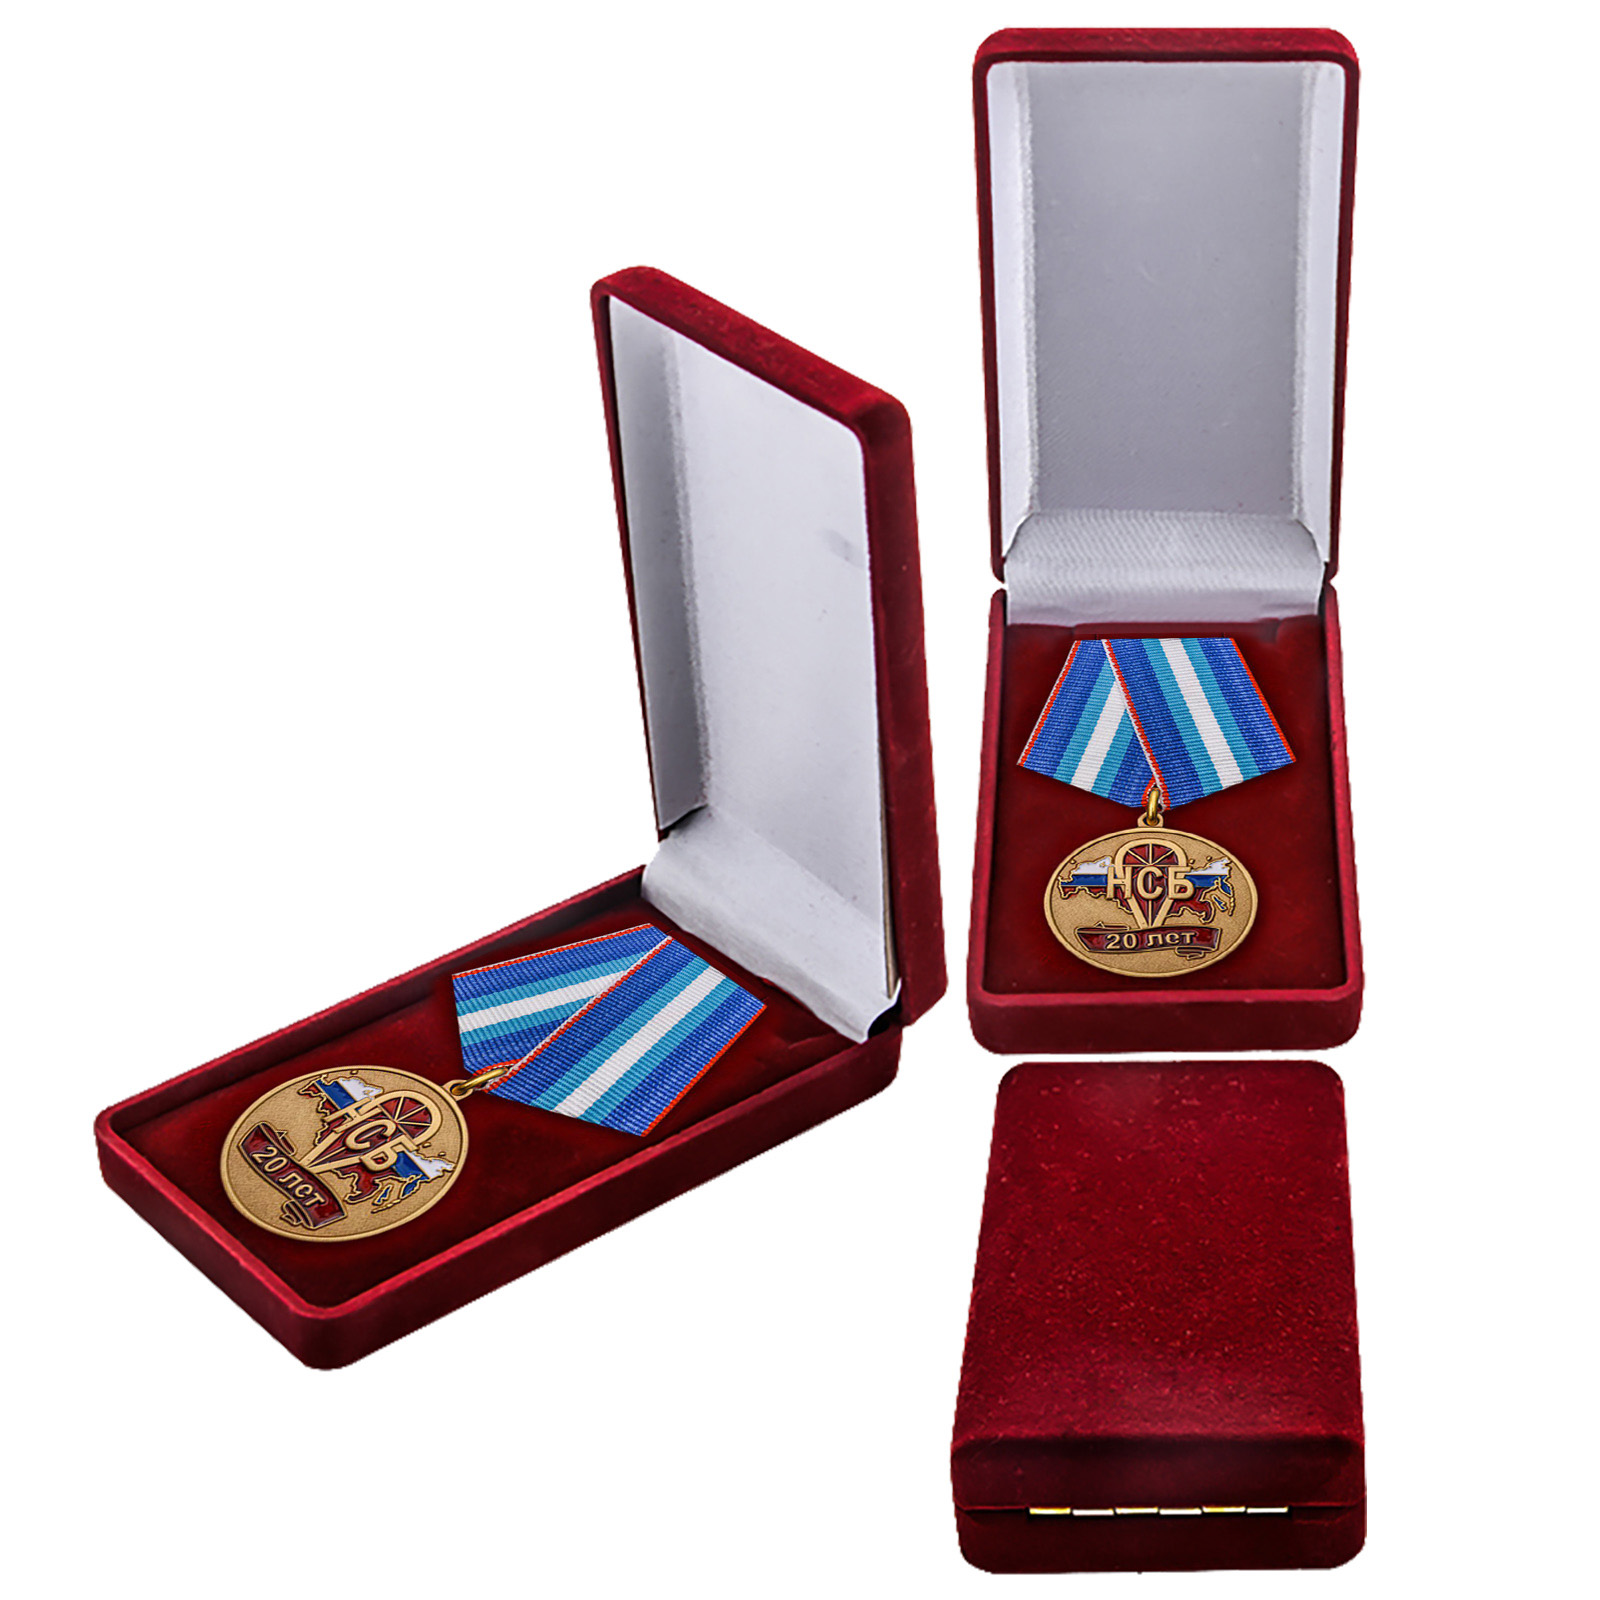 Купить памятную медаль 20 лет НСБ Негосударственная сфера безопасности онлайн